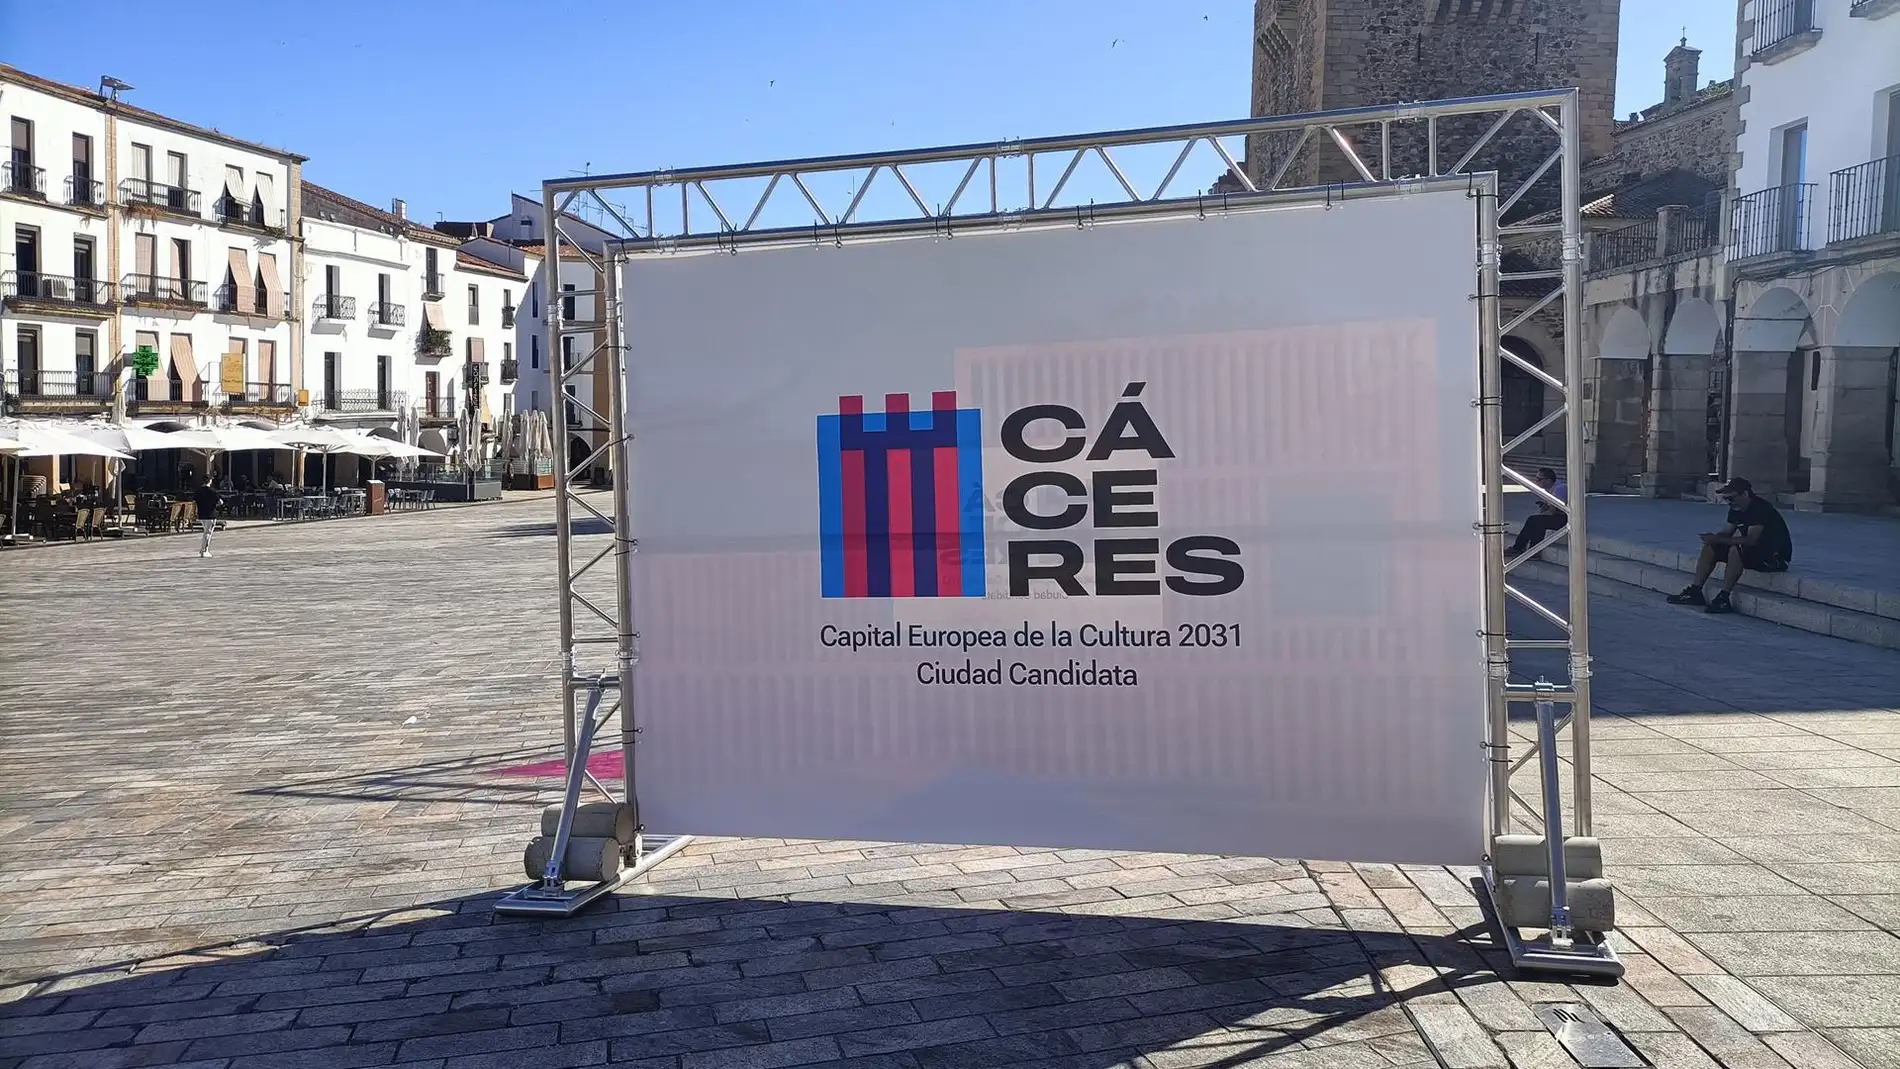 Cáceres 2031 da a conocer su nuevo logotipo que funde patrimonio histórico y vanguardia artística en busca de la capitalidad cultural